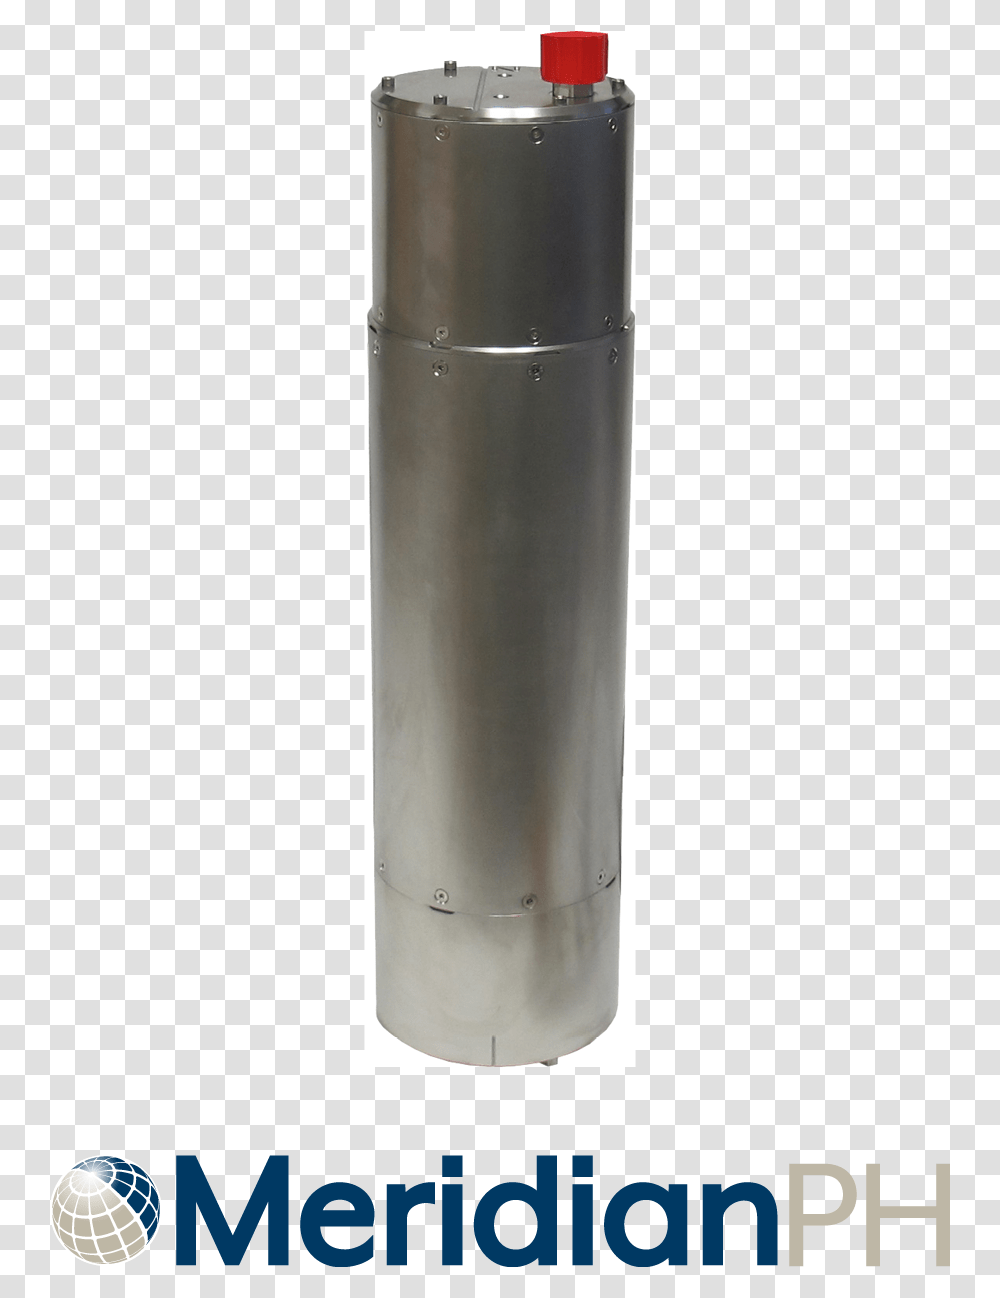 Meridian Ph Plastic, Shaker, Bottle, Cylinder, Steel Transparent Png